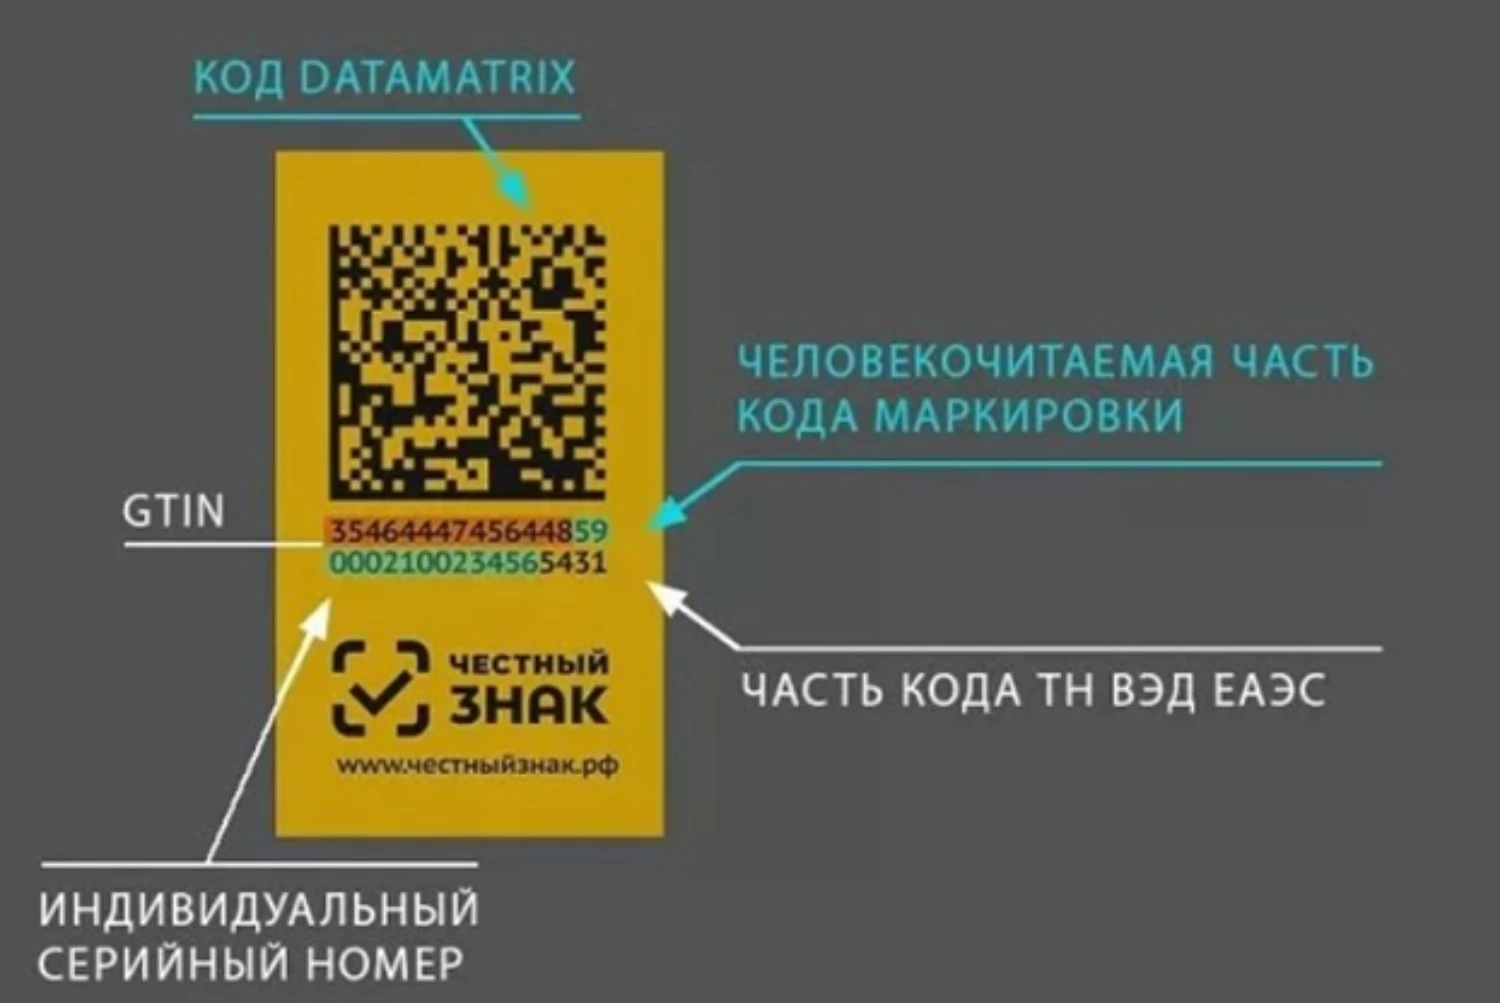 Qr код на упаковке. Data Matrix коды. Пример кода маркировки. Код маркировки DATAMATRIX. Маркировка честный знак.